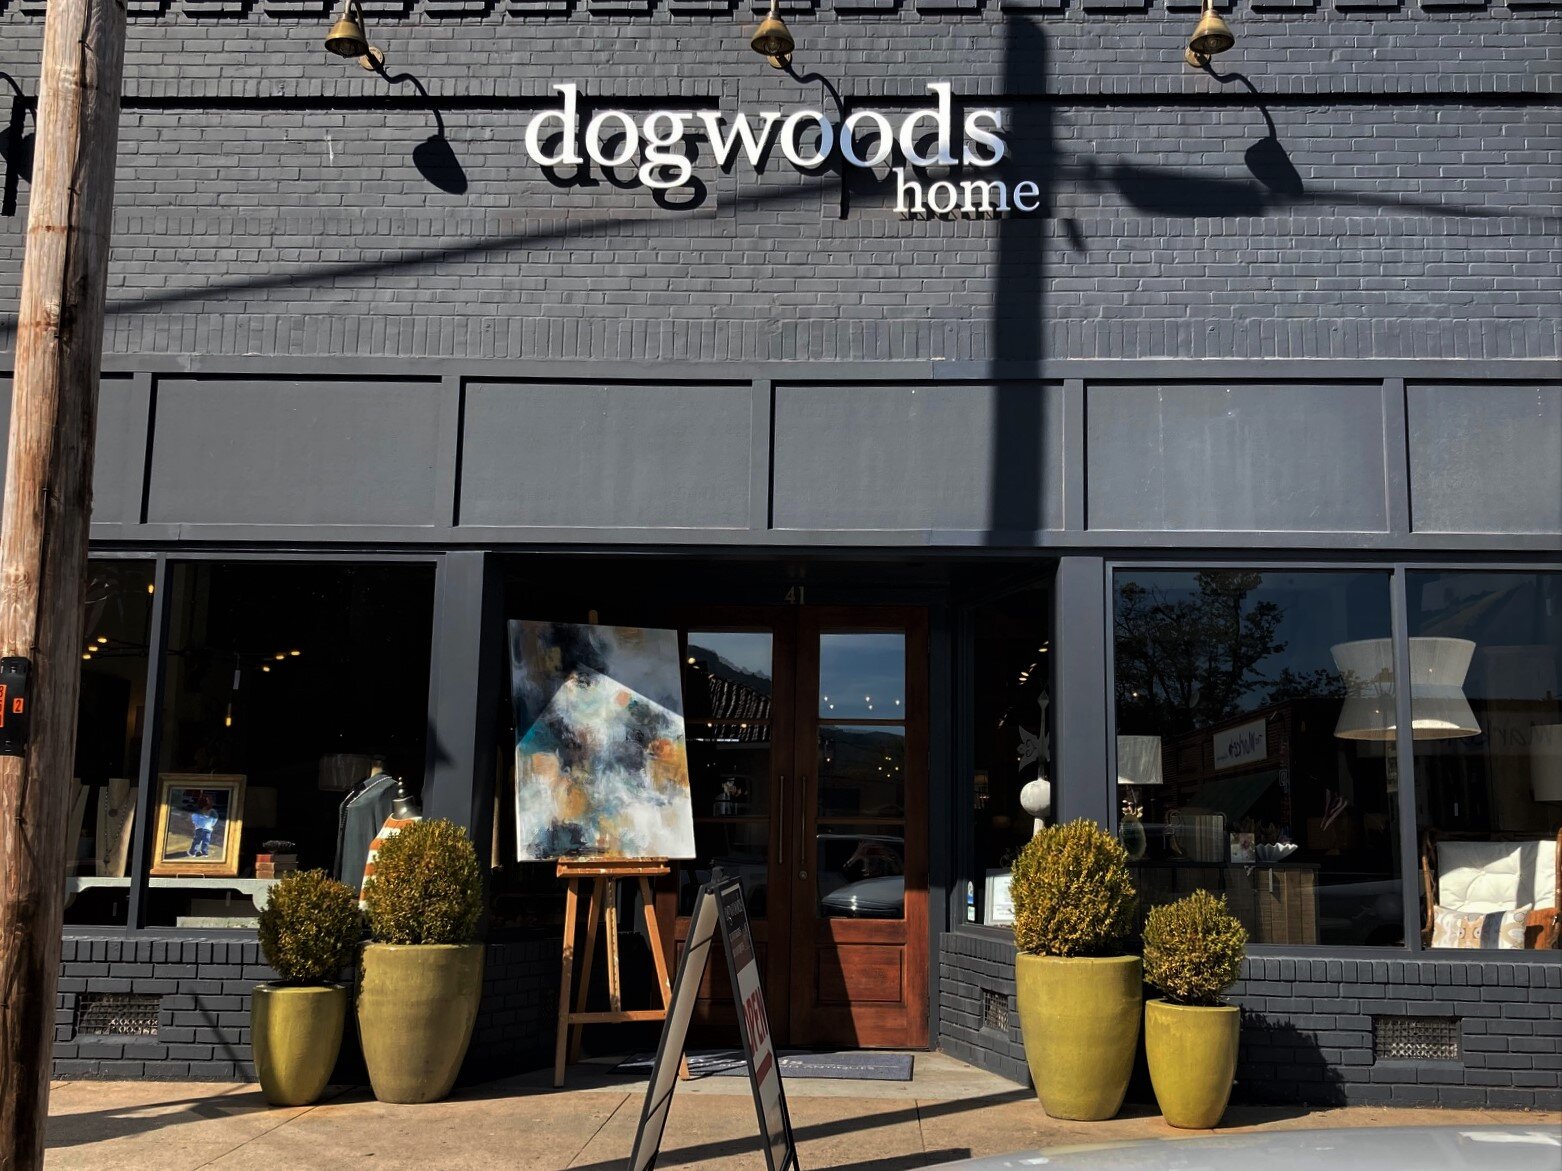 Dogwoods Home exterior